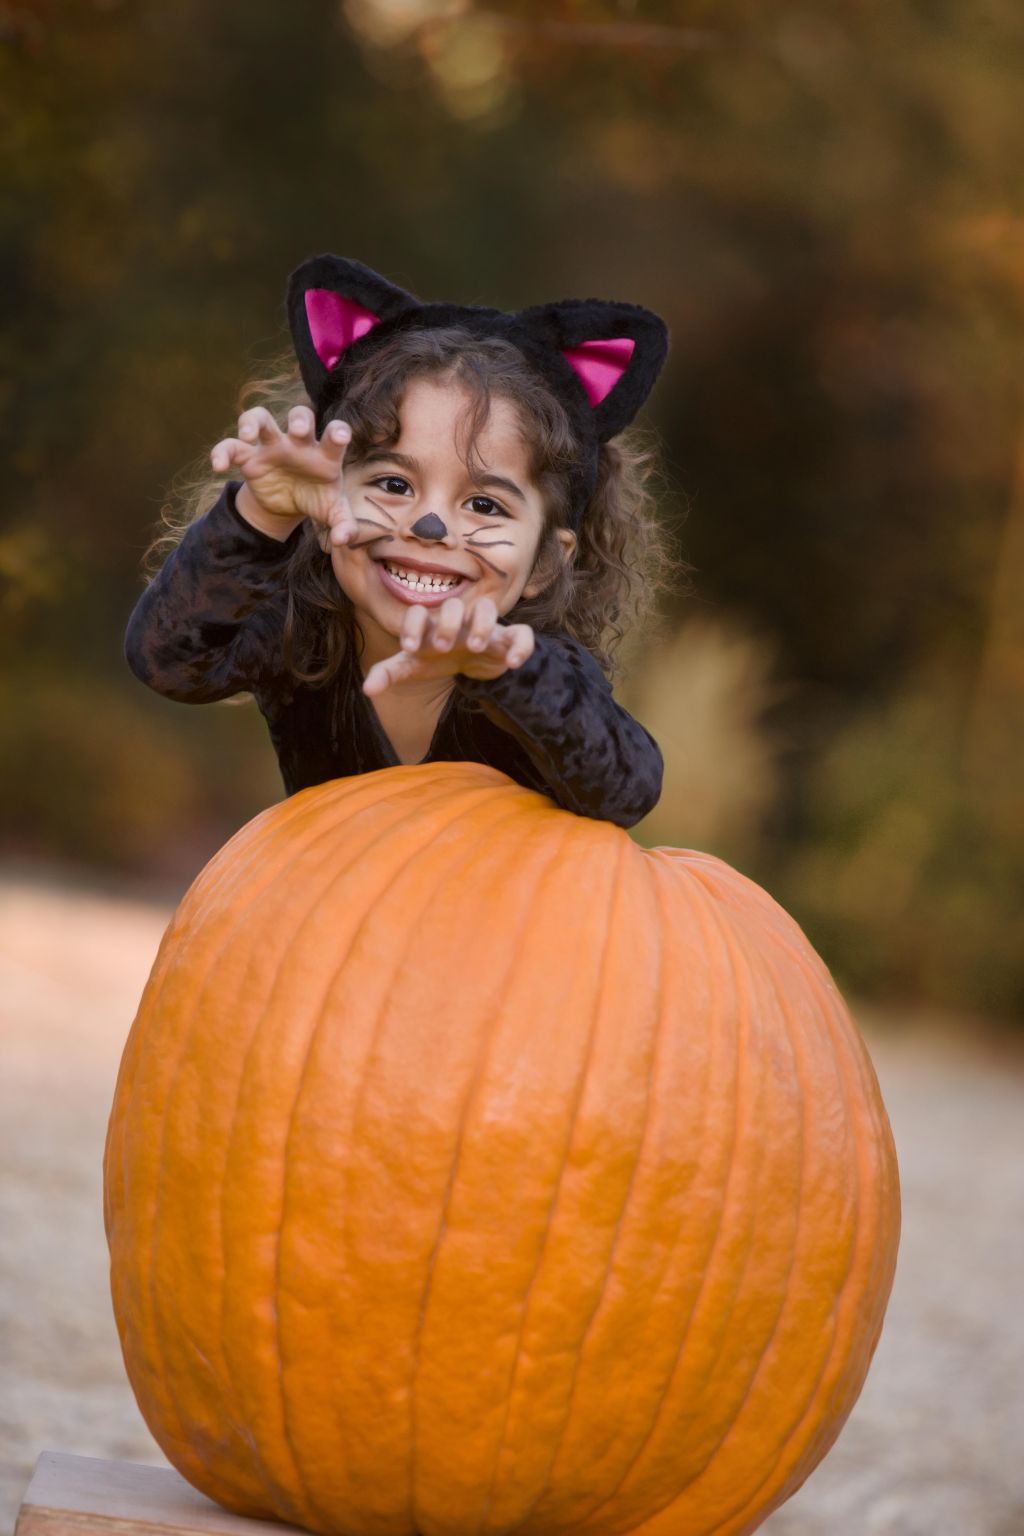 Girl (4-5) in cat costume standing behind pumpkin, portrait